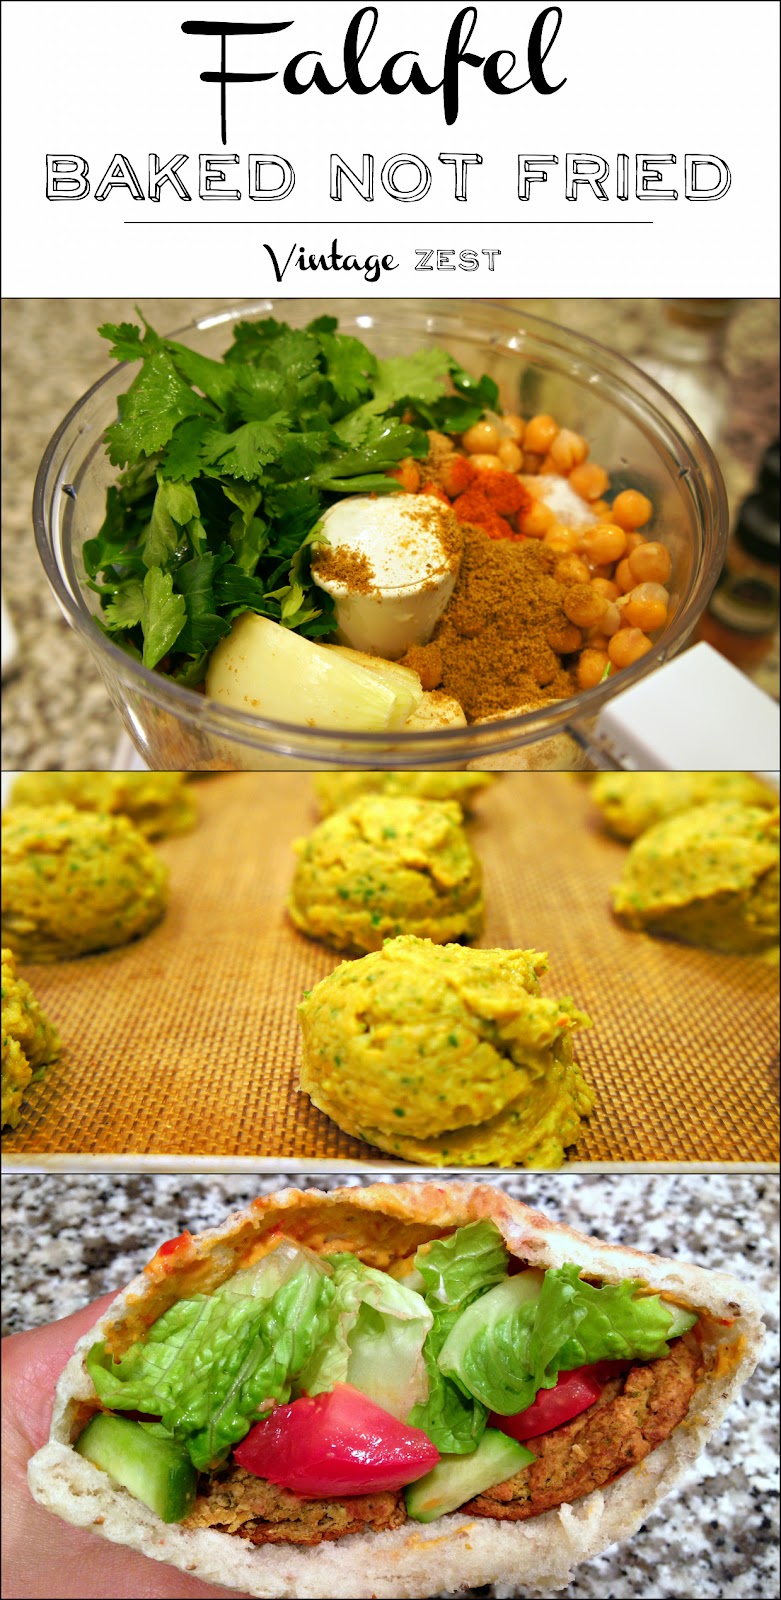 Falafel - Baked Not Fried on Diane's Vintage Zest@ #recipe #healthy #vegetarian